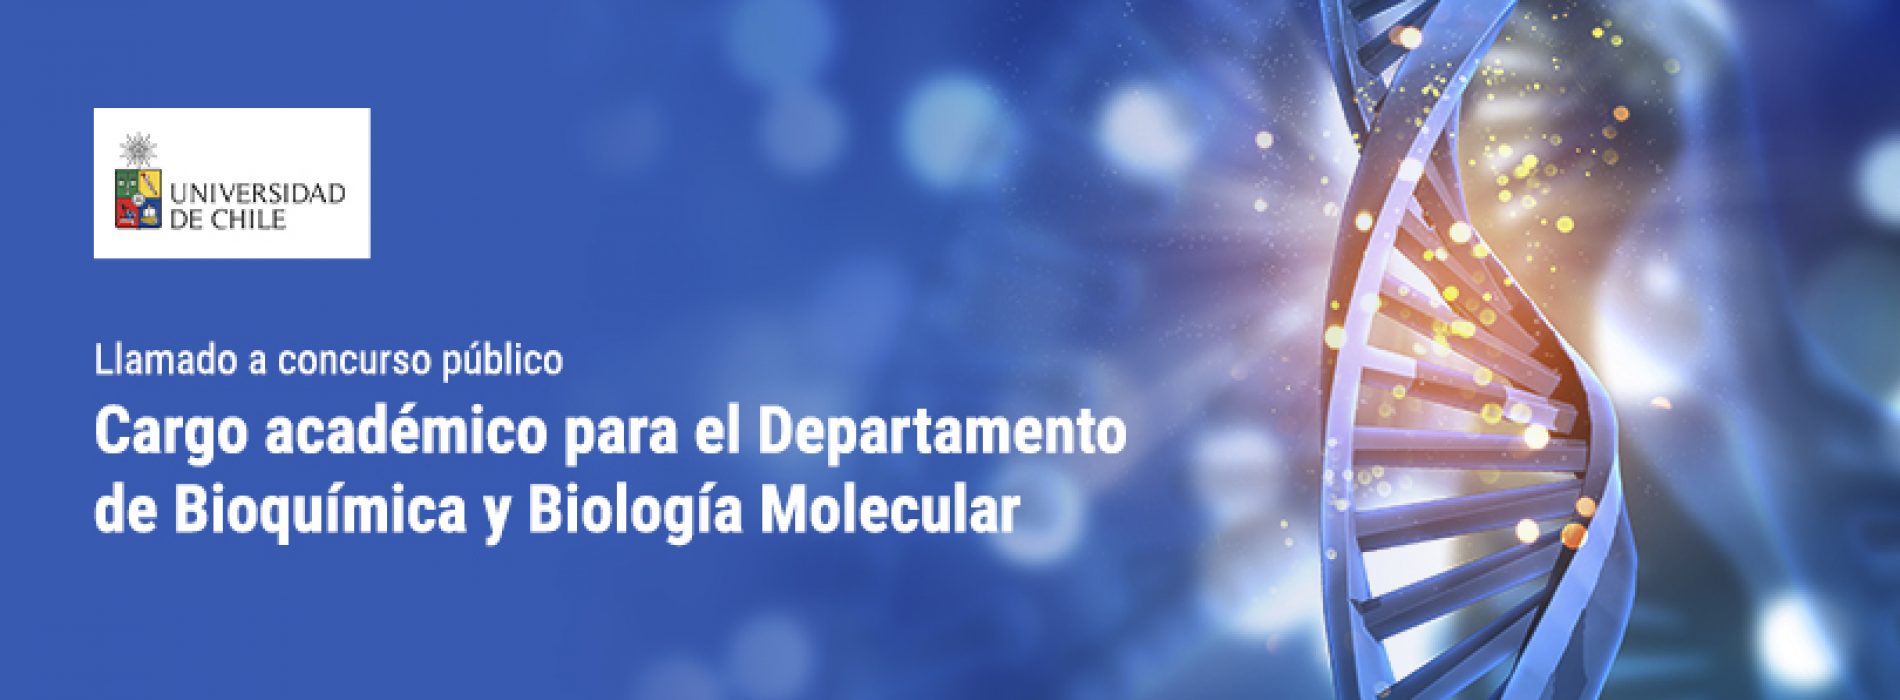 Llamado a Concurso Público para cargo académico para el Departamento de Bioquímica y Biología Molecular